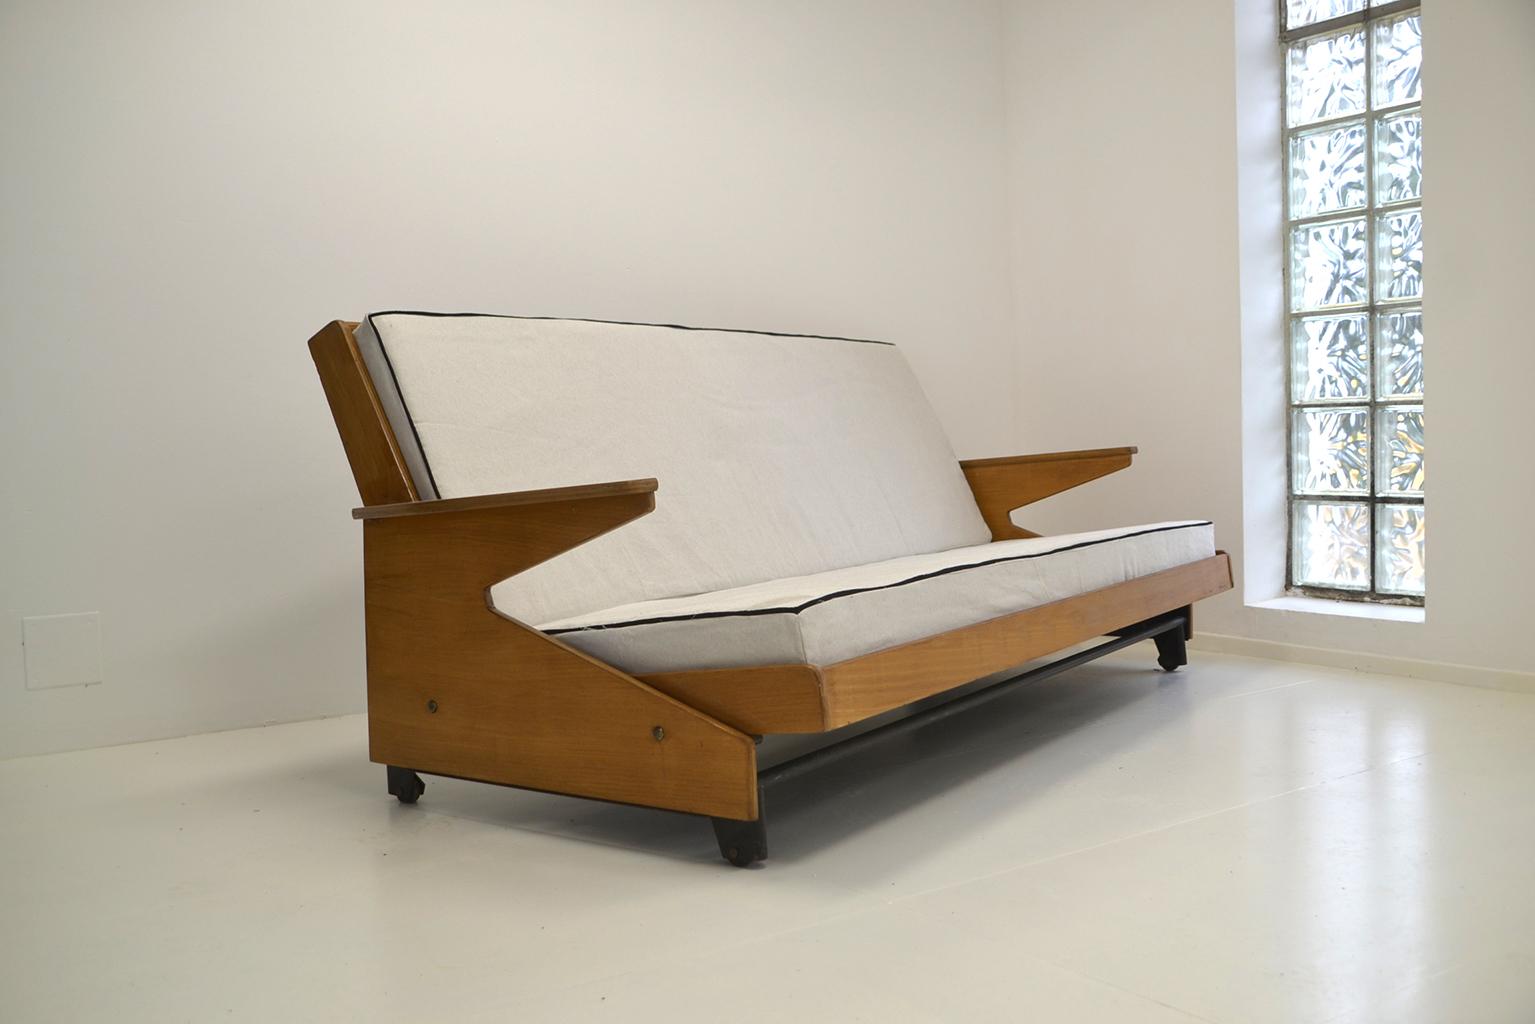 Canapé français de Gérard Guermonprez,
vers 1950.
Le canapé devient un lit pour deux personnes.
Nouveaux tissus et nouvelles mousses.
 